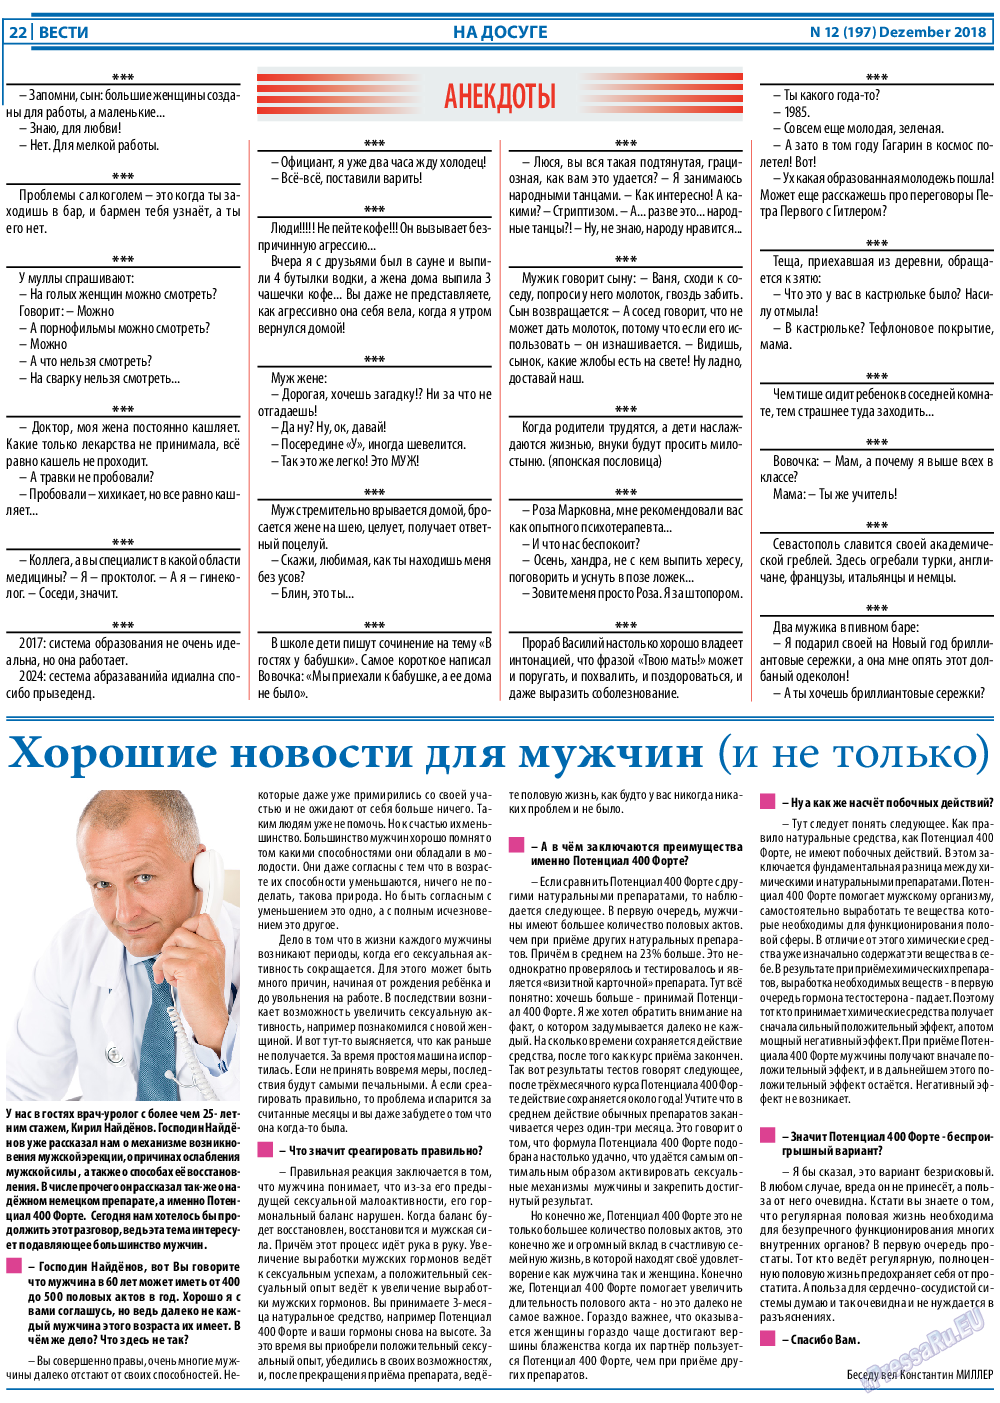 Вести, газета. 2018 №12 стр.22